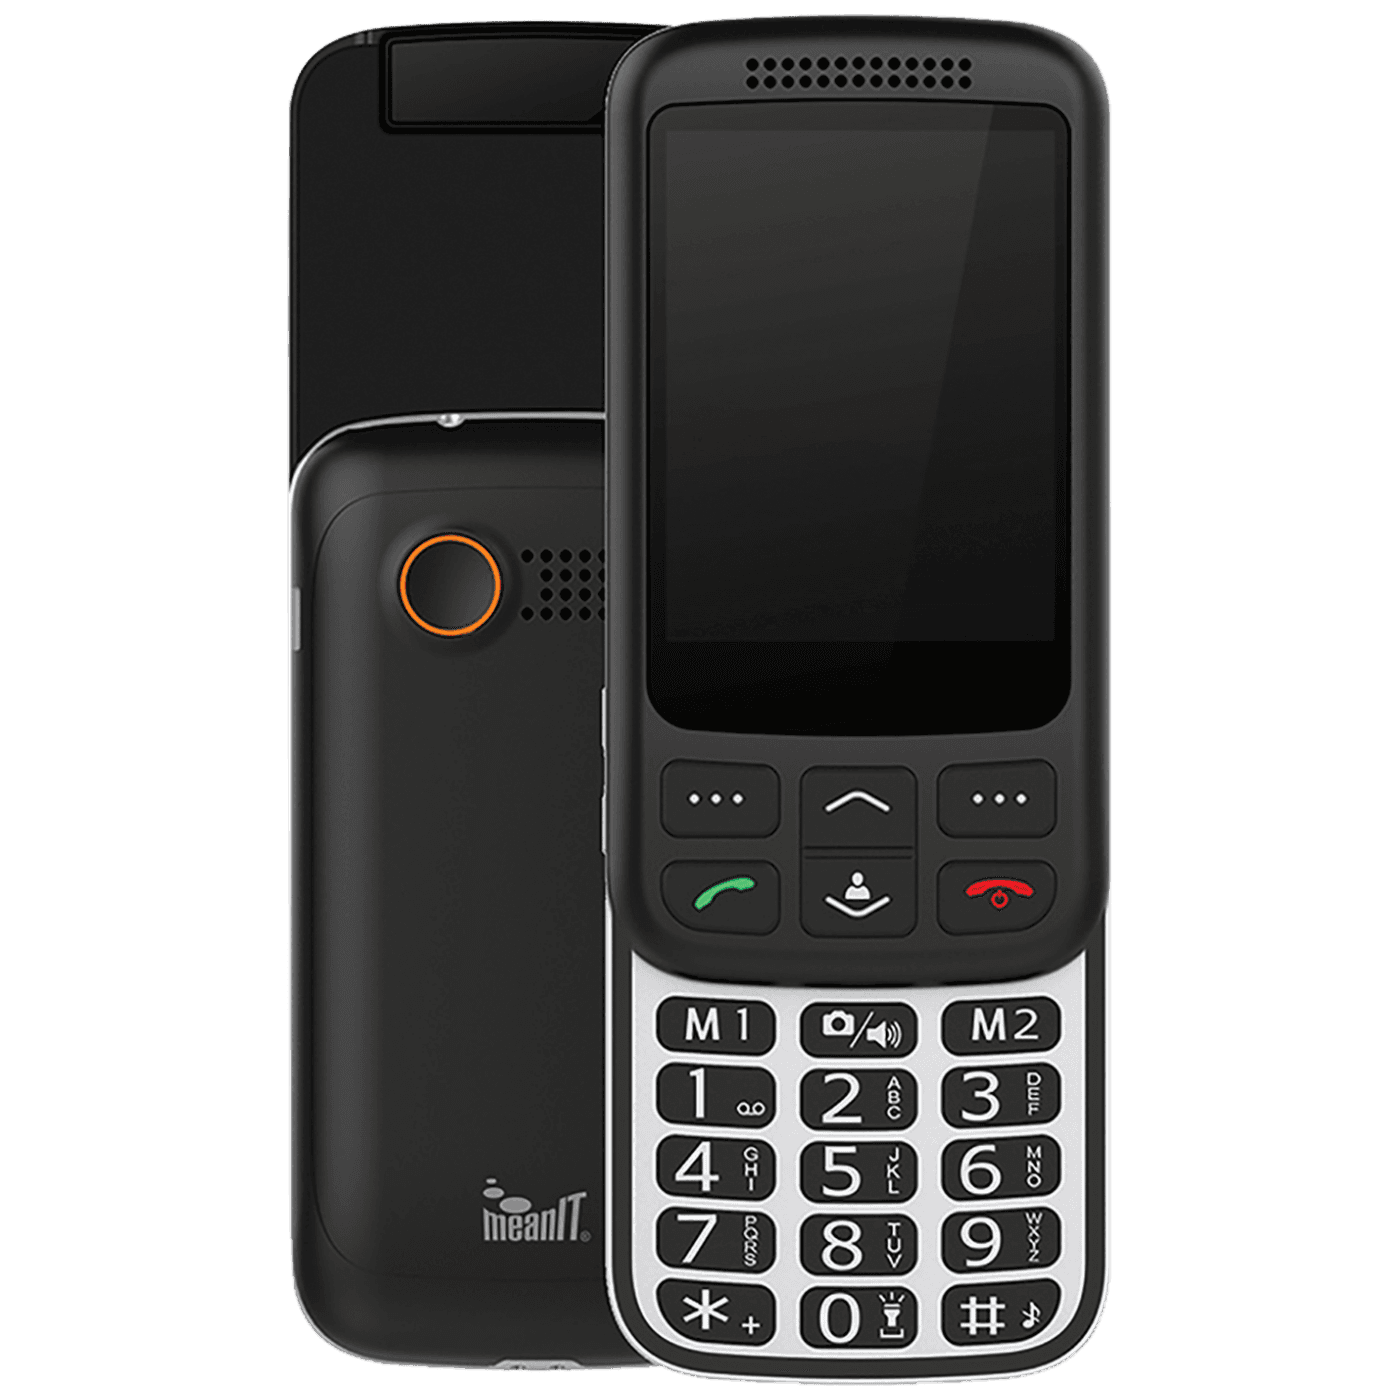 MEANIT Mobilni telefon 2.8" zaslon (7.1 cm ) Dual SIM